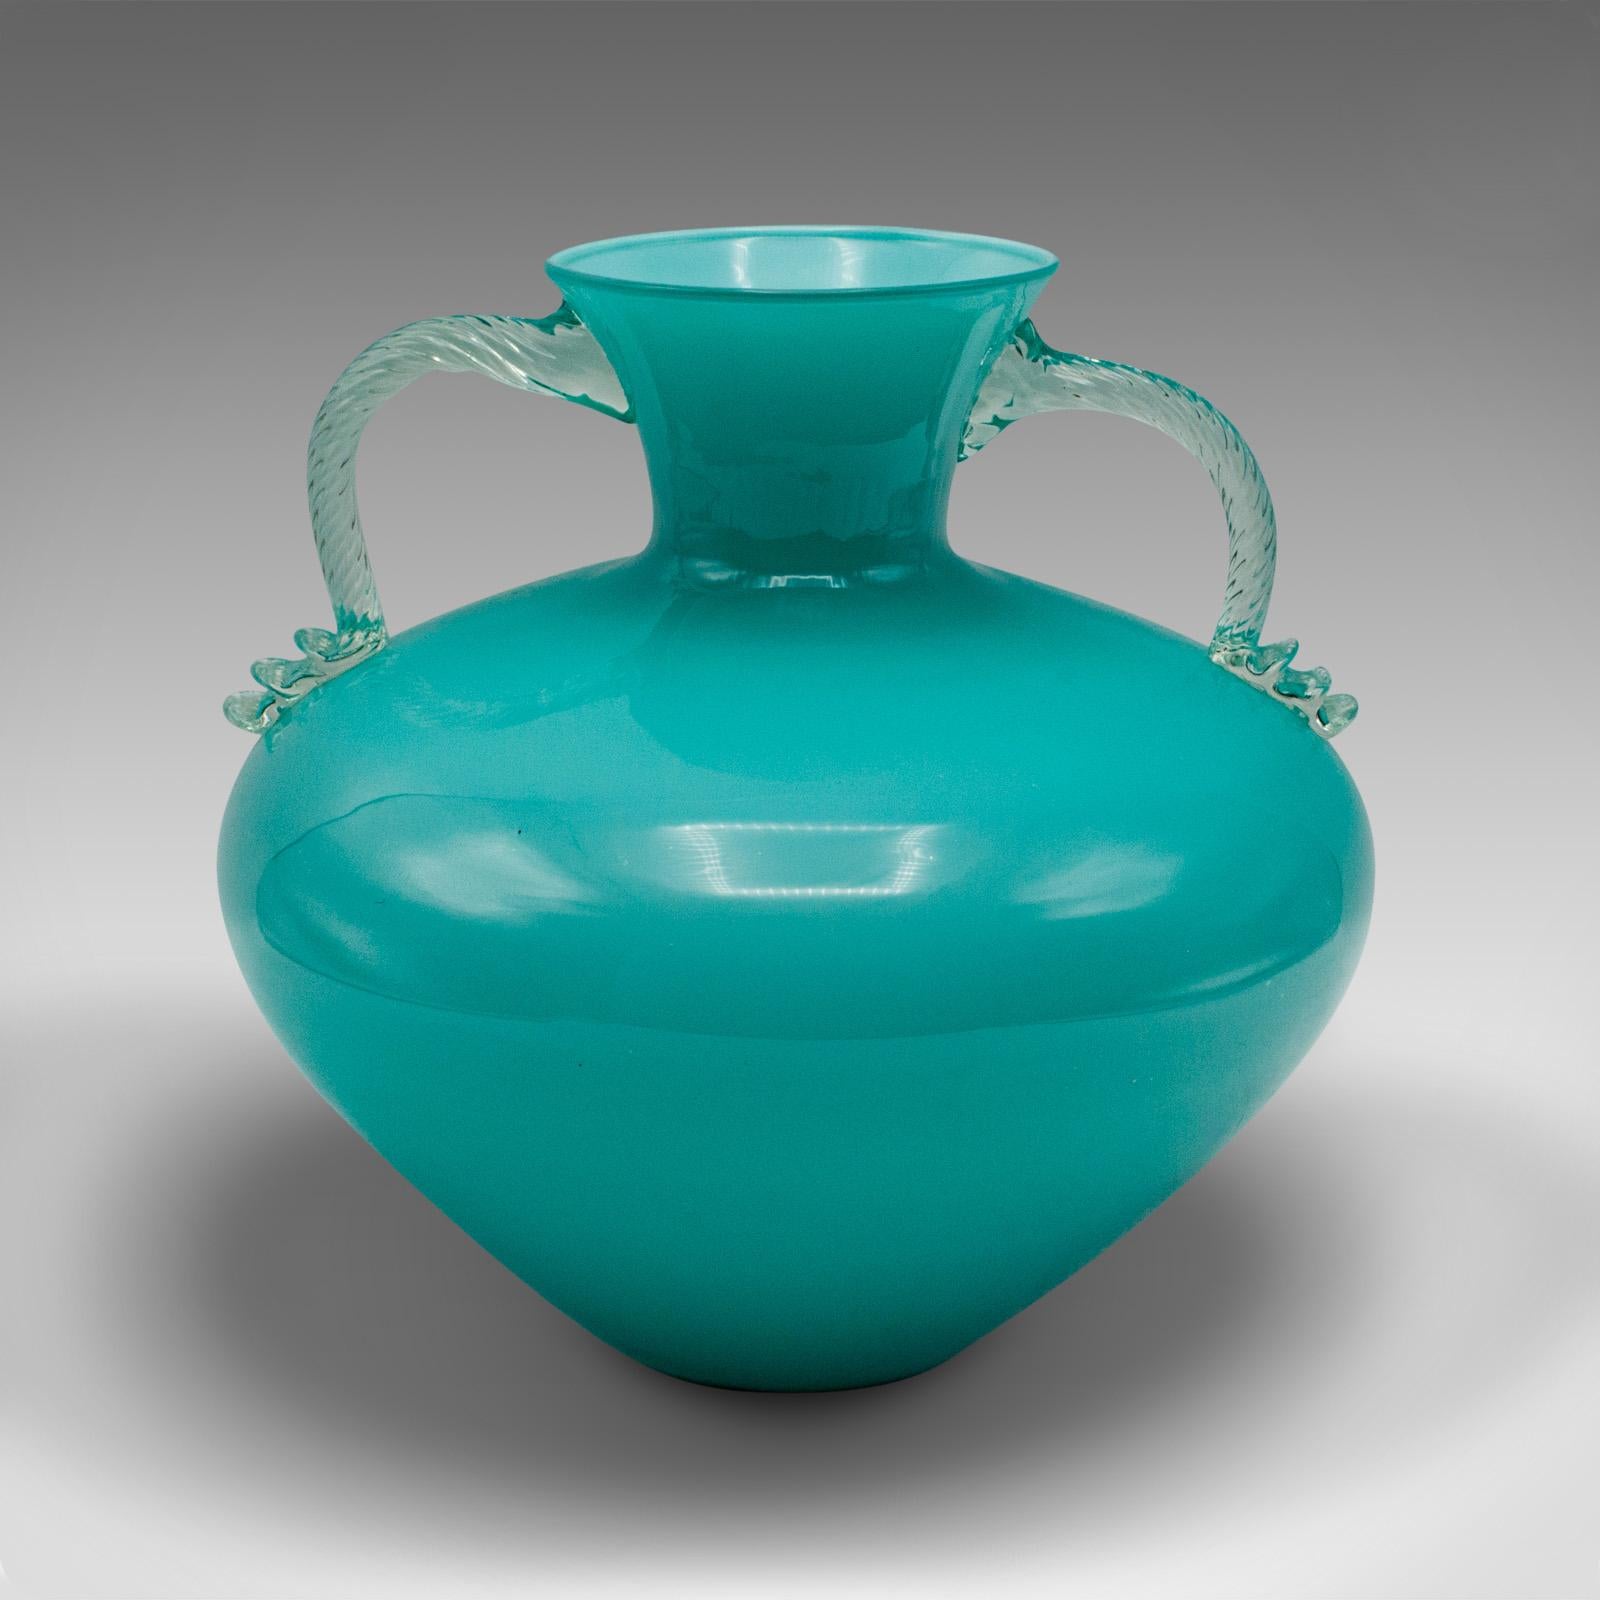 Dies ist ein Jahrgang Murano Doppelgriff Vase. Ein italienischer, dekorativer Baluster aus Kunstglas aus der Mitte des 20. Jahrhunderts, ca. 1960.

Auffallende Farbe mit schönen Proportionen und ästhetischem Reiz
Zeigt eine wünschenswerte gealterte